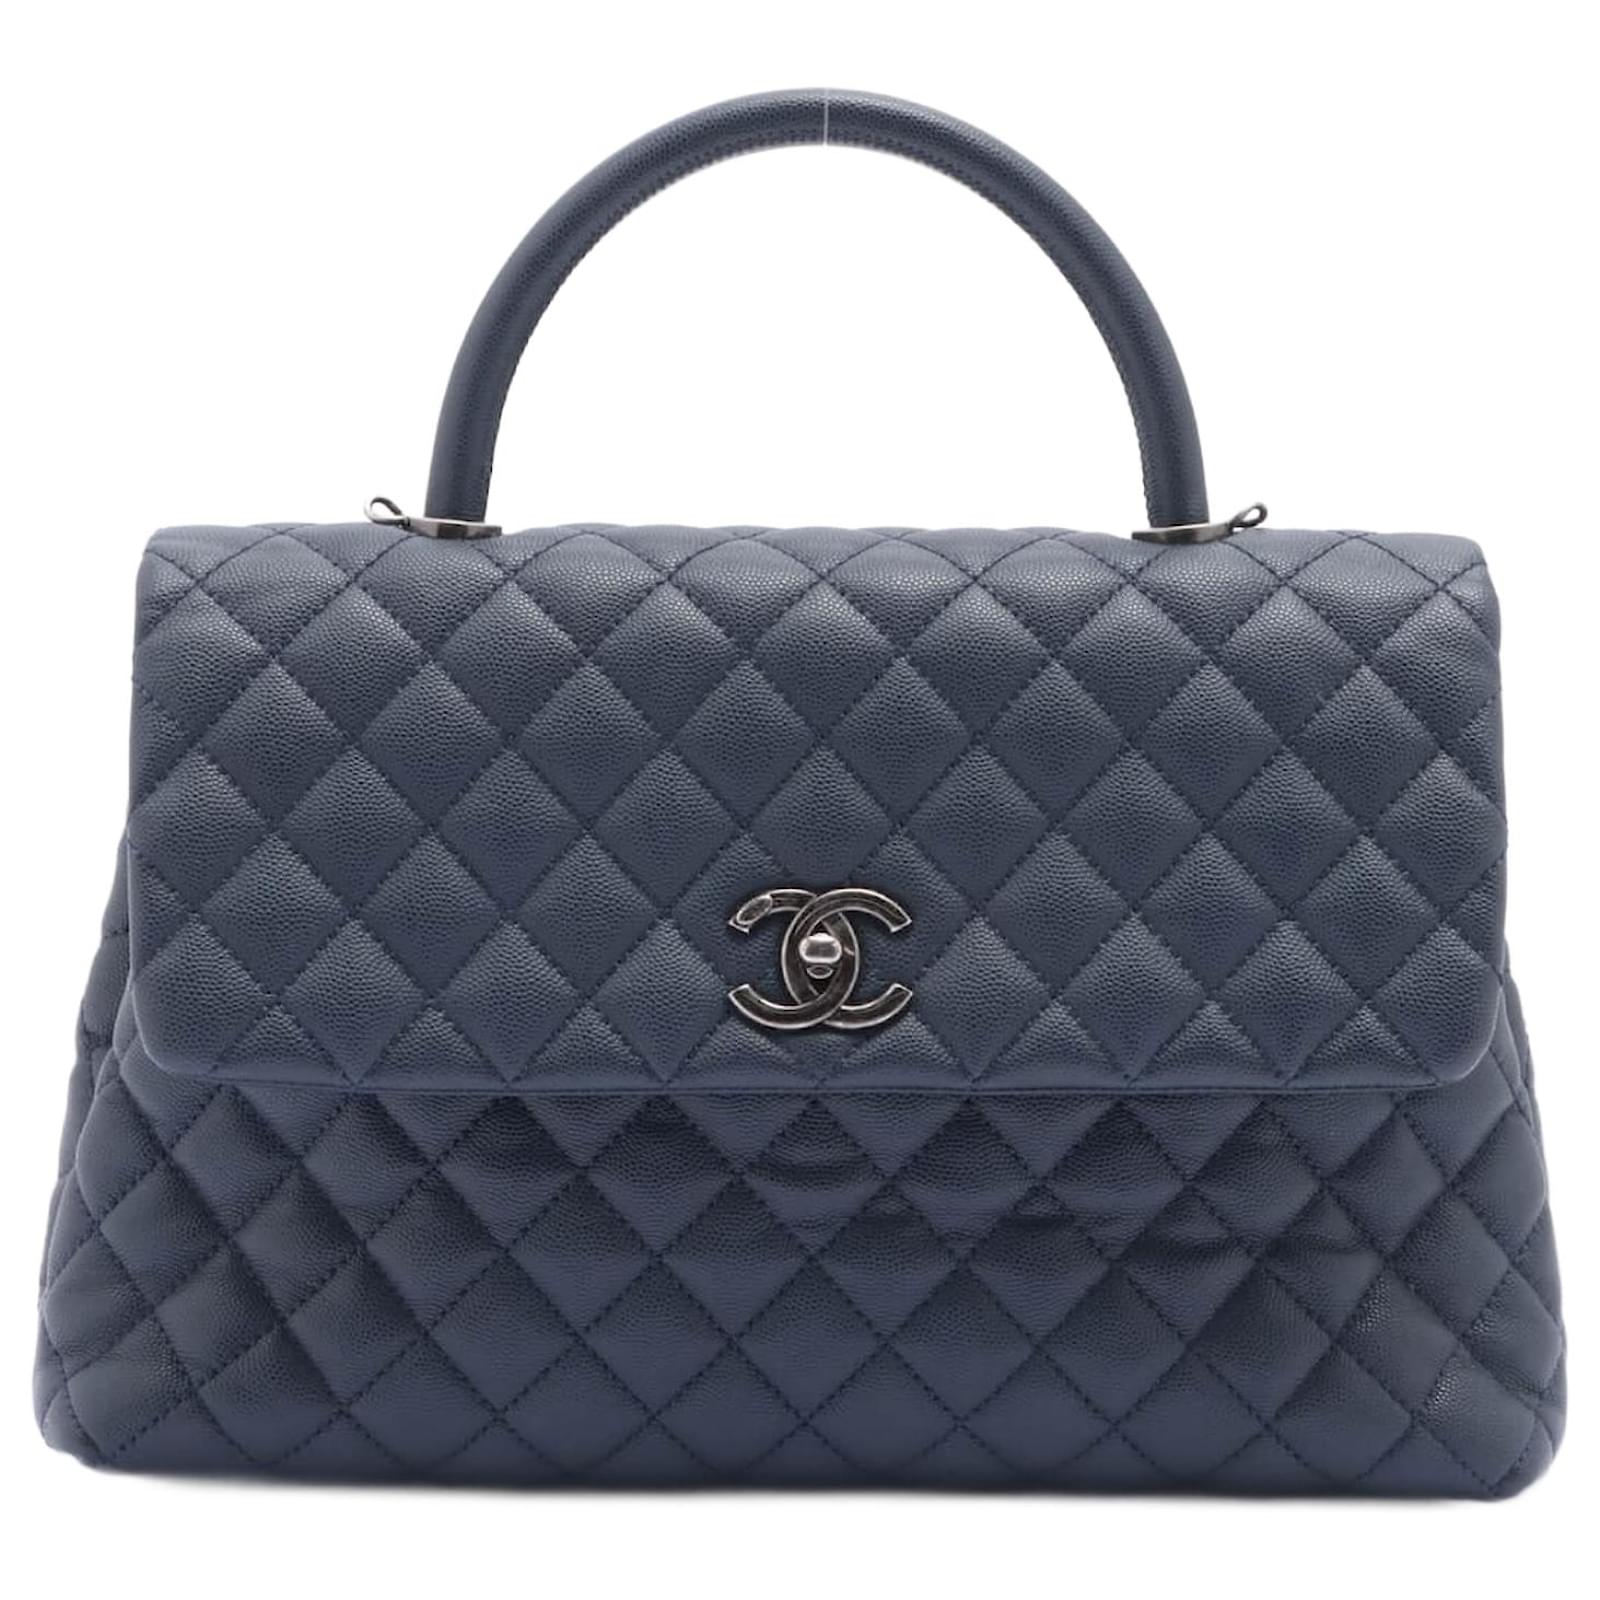 Chanel Coco Handle Large Caviar Handbag